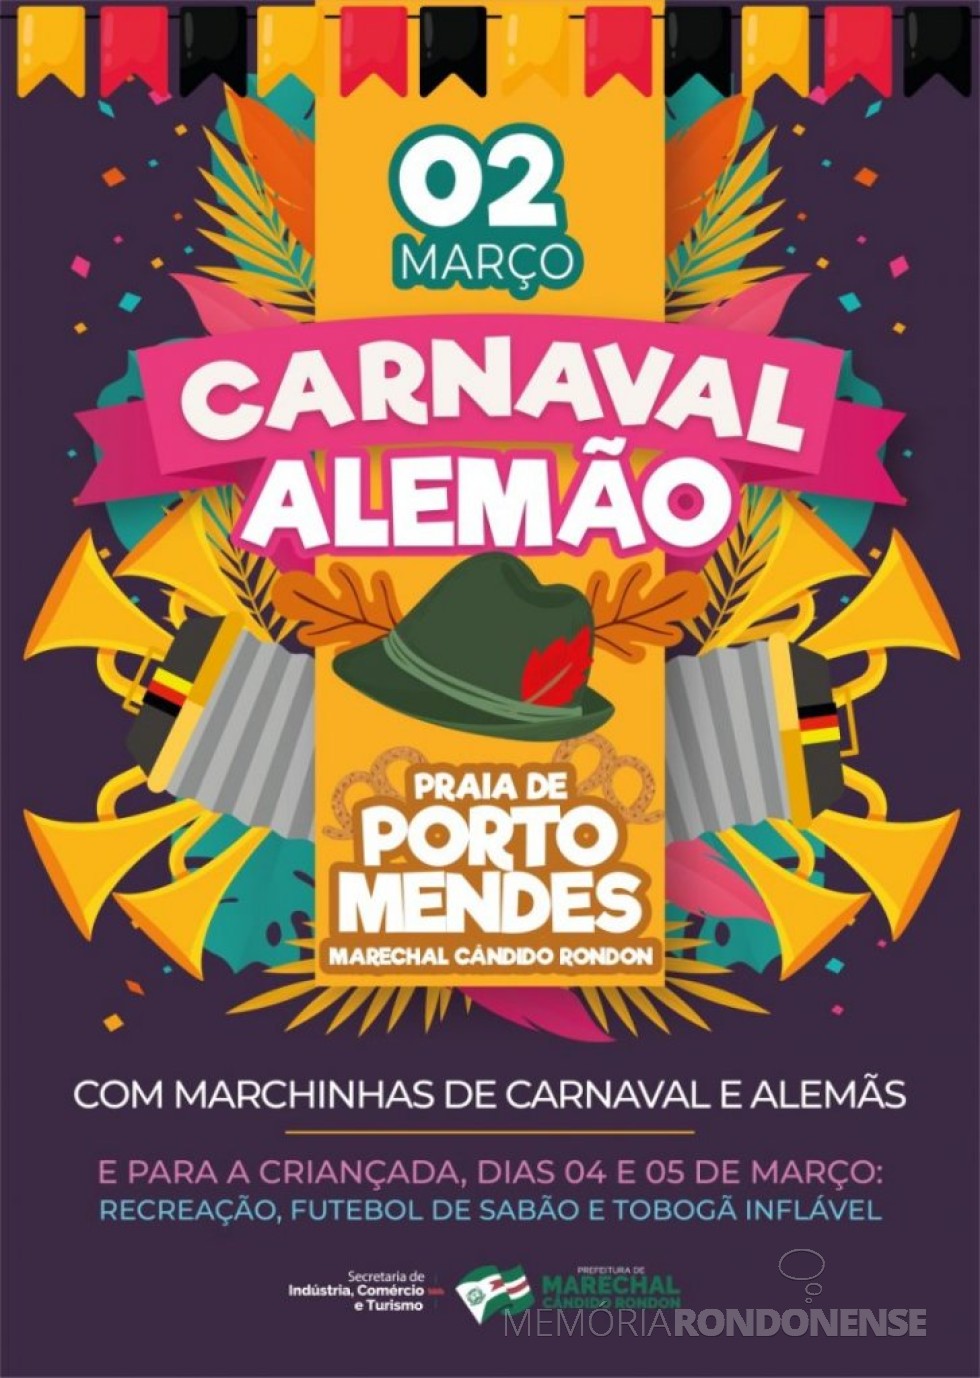 || Cartaz alusivo a 1ª edição do Carnaval Alemão, em Marechal Cândido Rondon, no parque de Lazer em Porto Mendes, em março de 2019.
Imagem: Acervo Memória Rondonense - FOTO 9 -